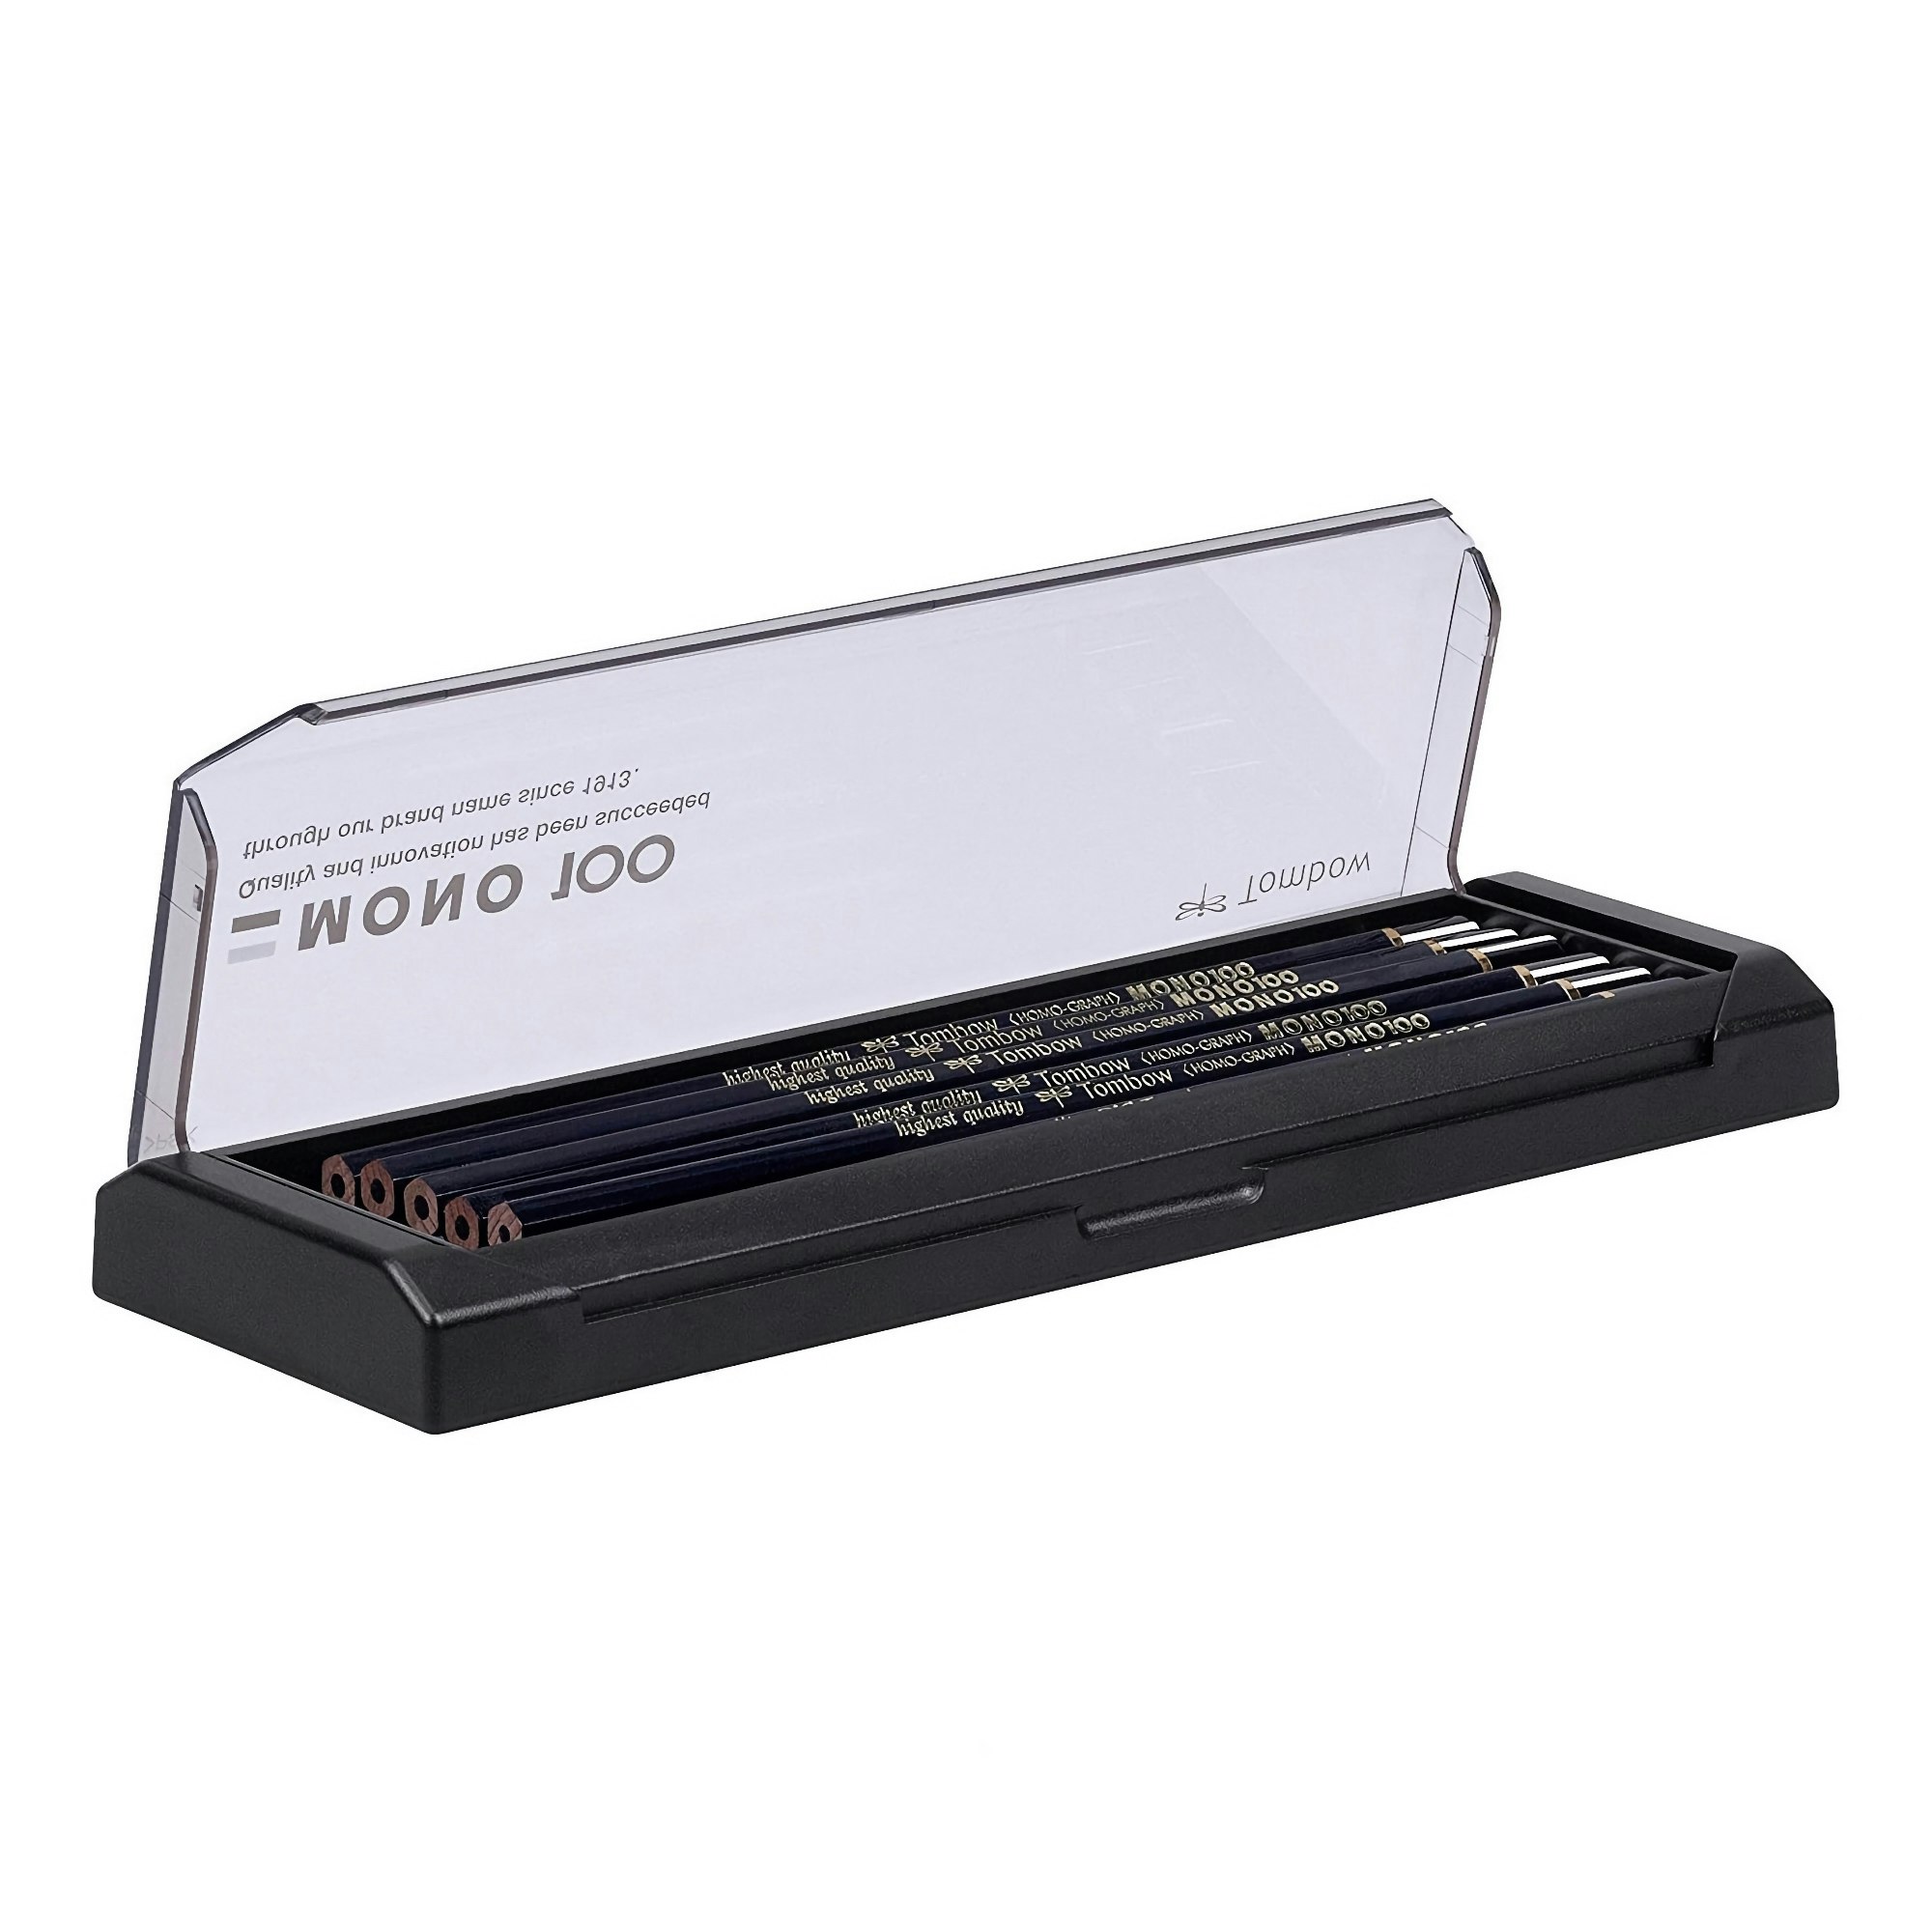 Tombow Mono 100 Pencil – 2B – set of 12